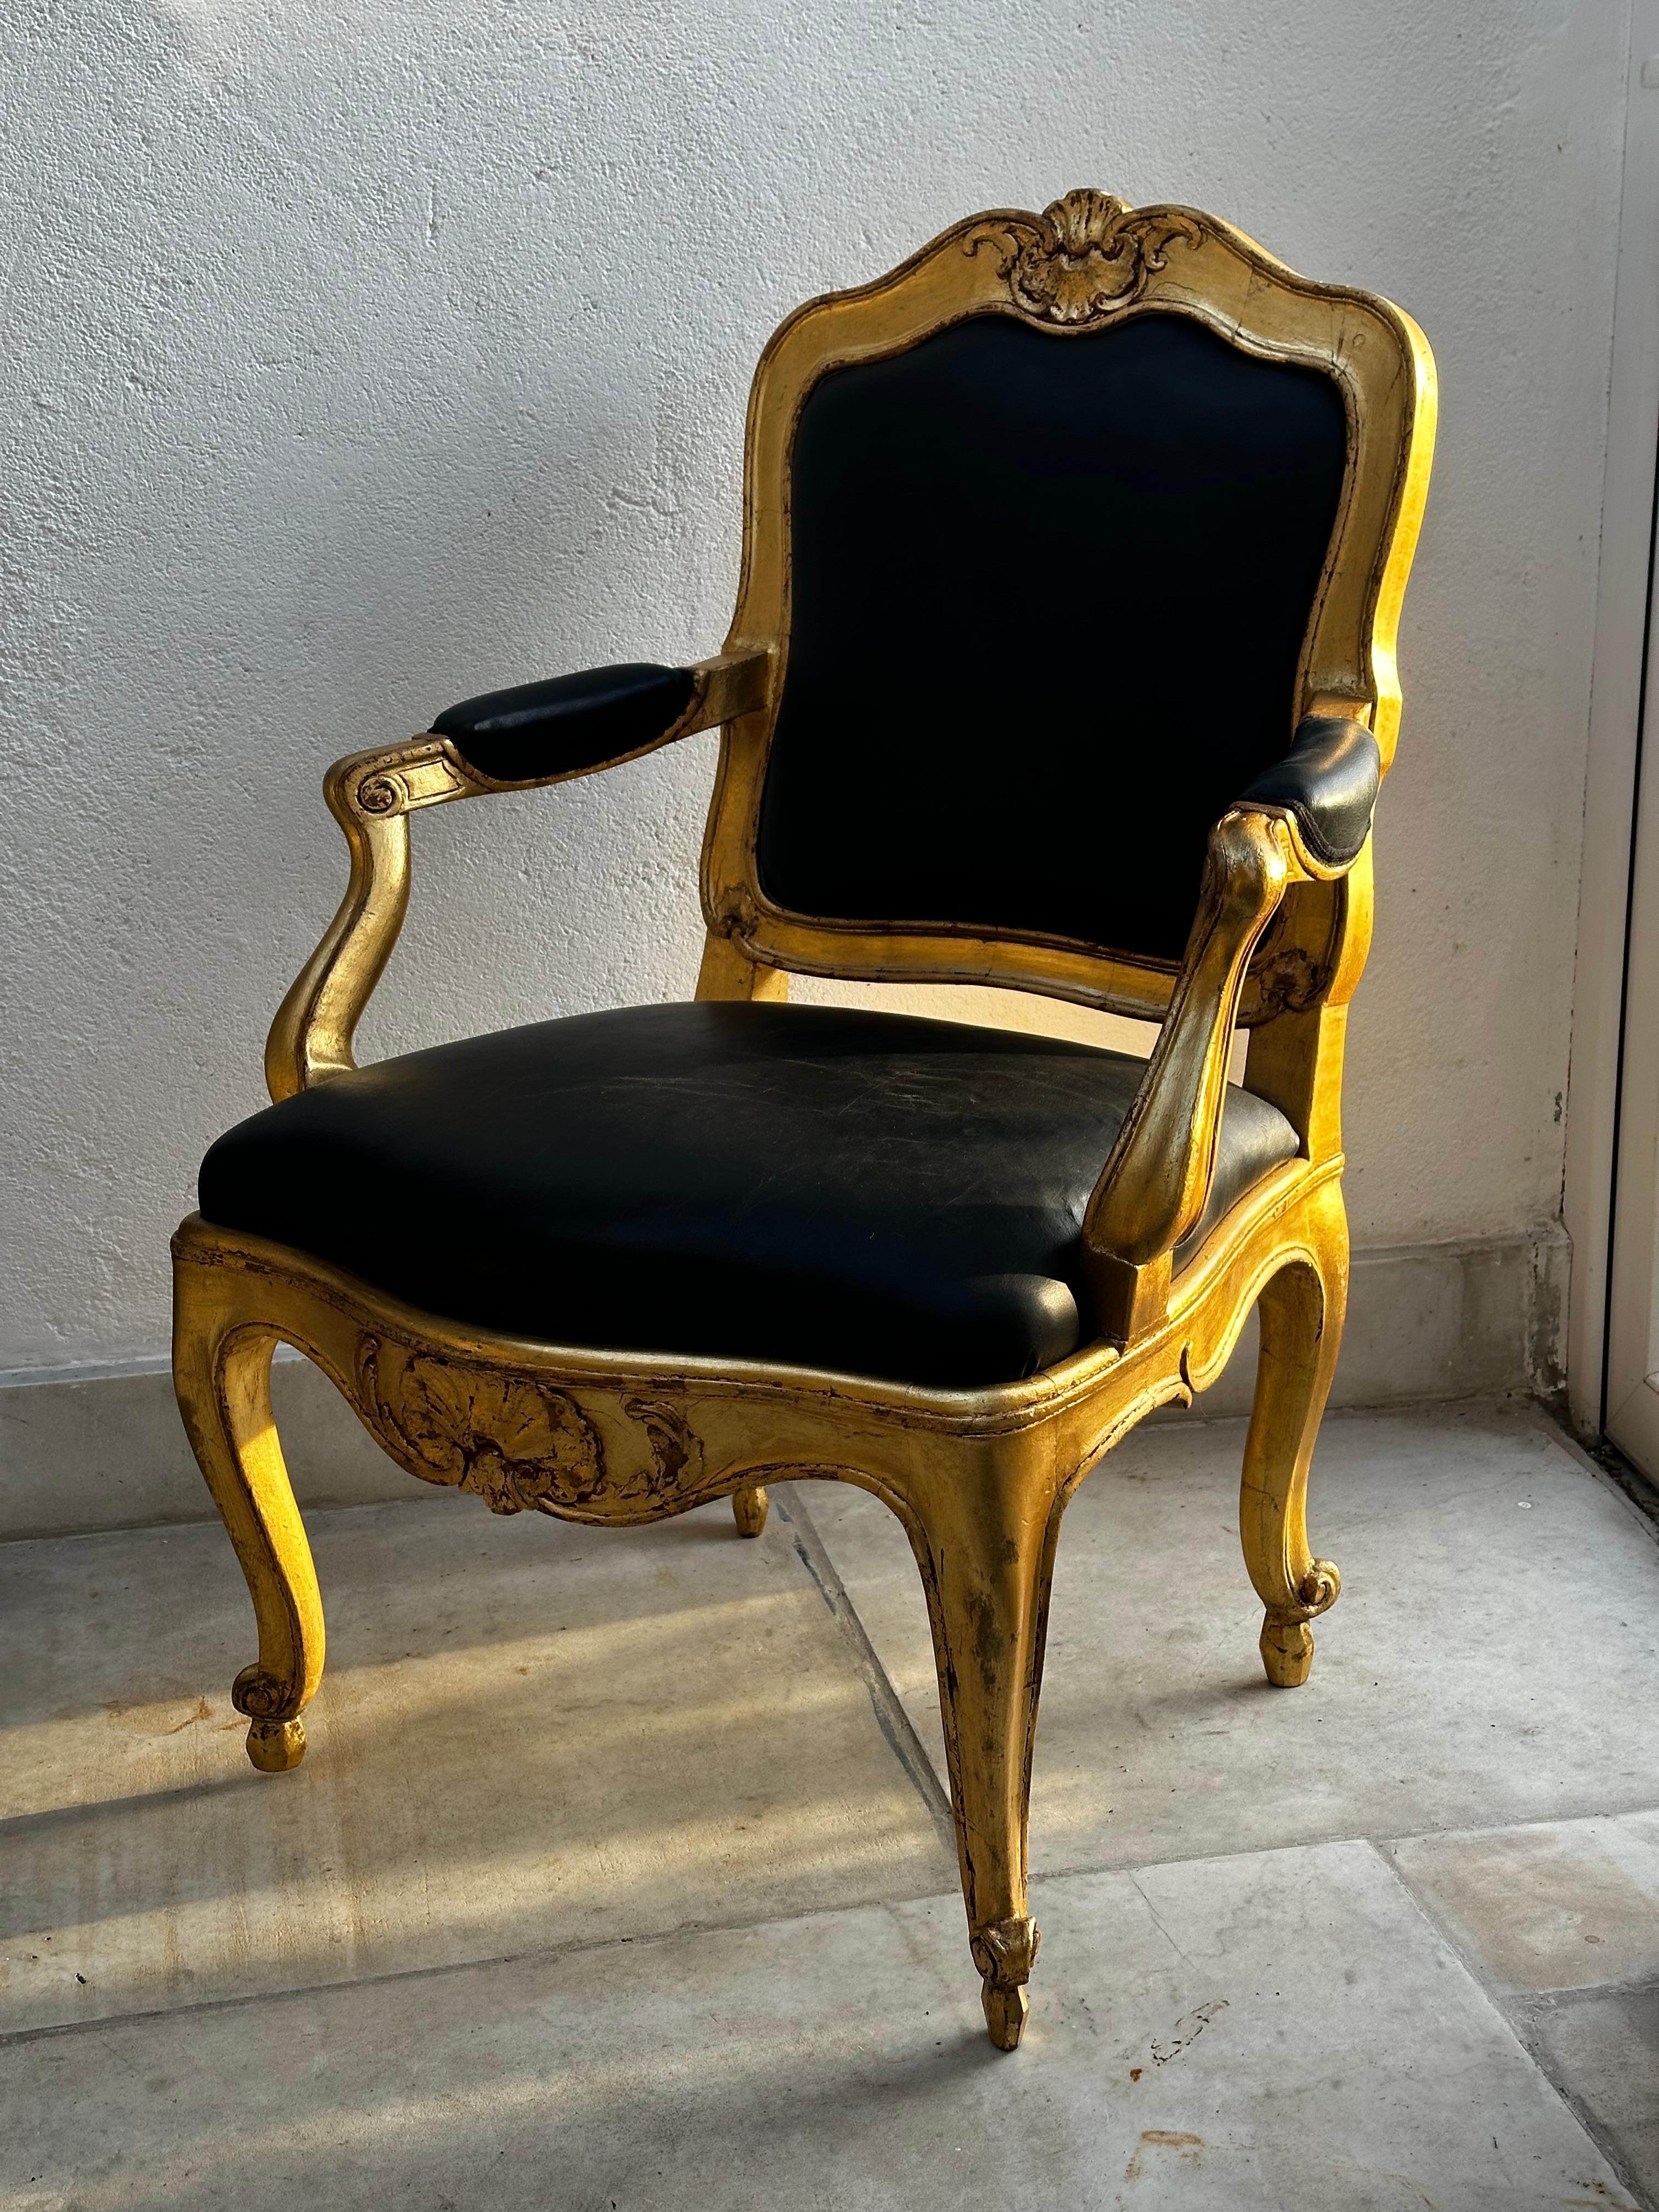 Une paire d'appareils de grande classe  Fauteuils rococo fabriqués à Stockholm. Ce type de fauteuils à dossier amovible était fabriqué dans l'atelier du château. Les pieds avant sont décorés de feuilles d'acanthe et le haut et le bas de l'avant de